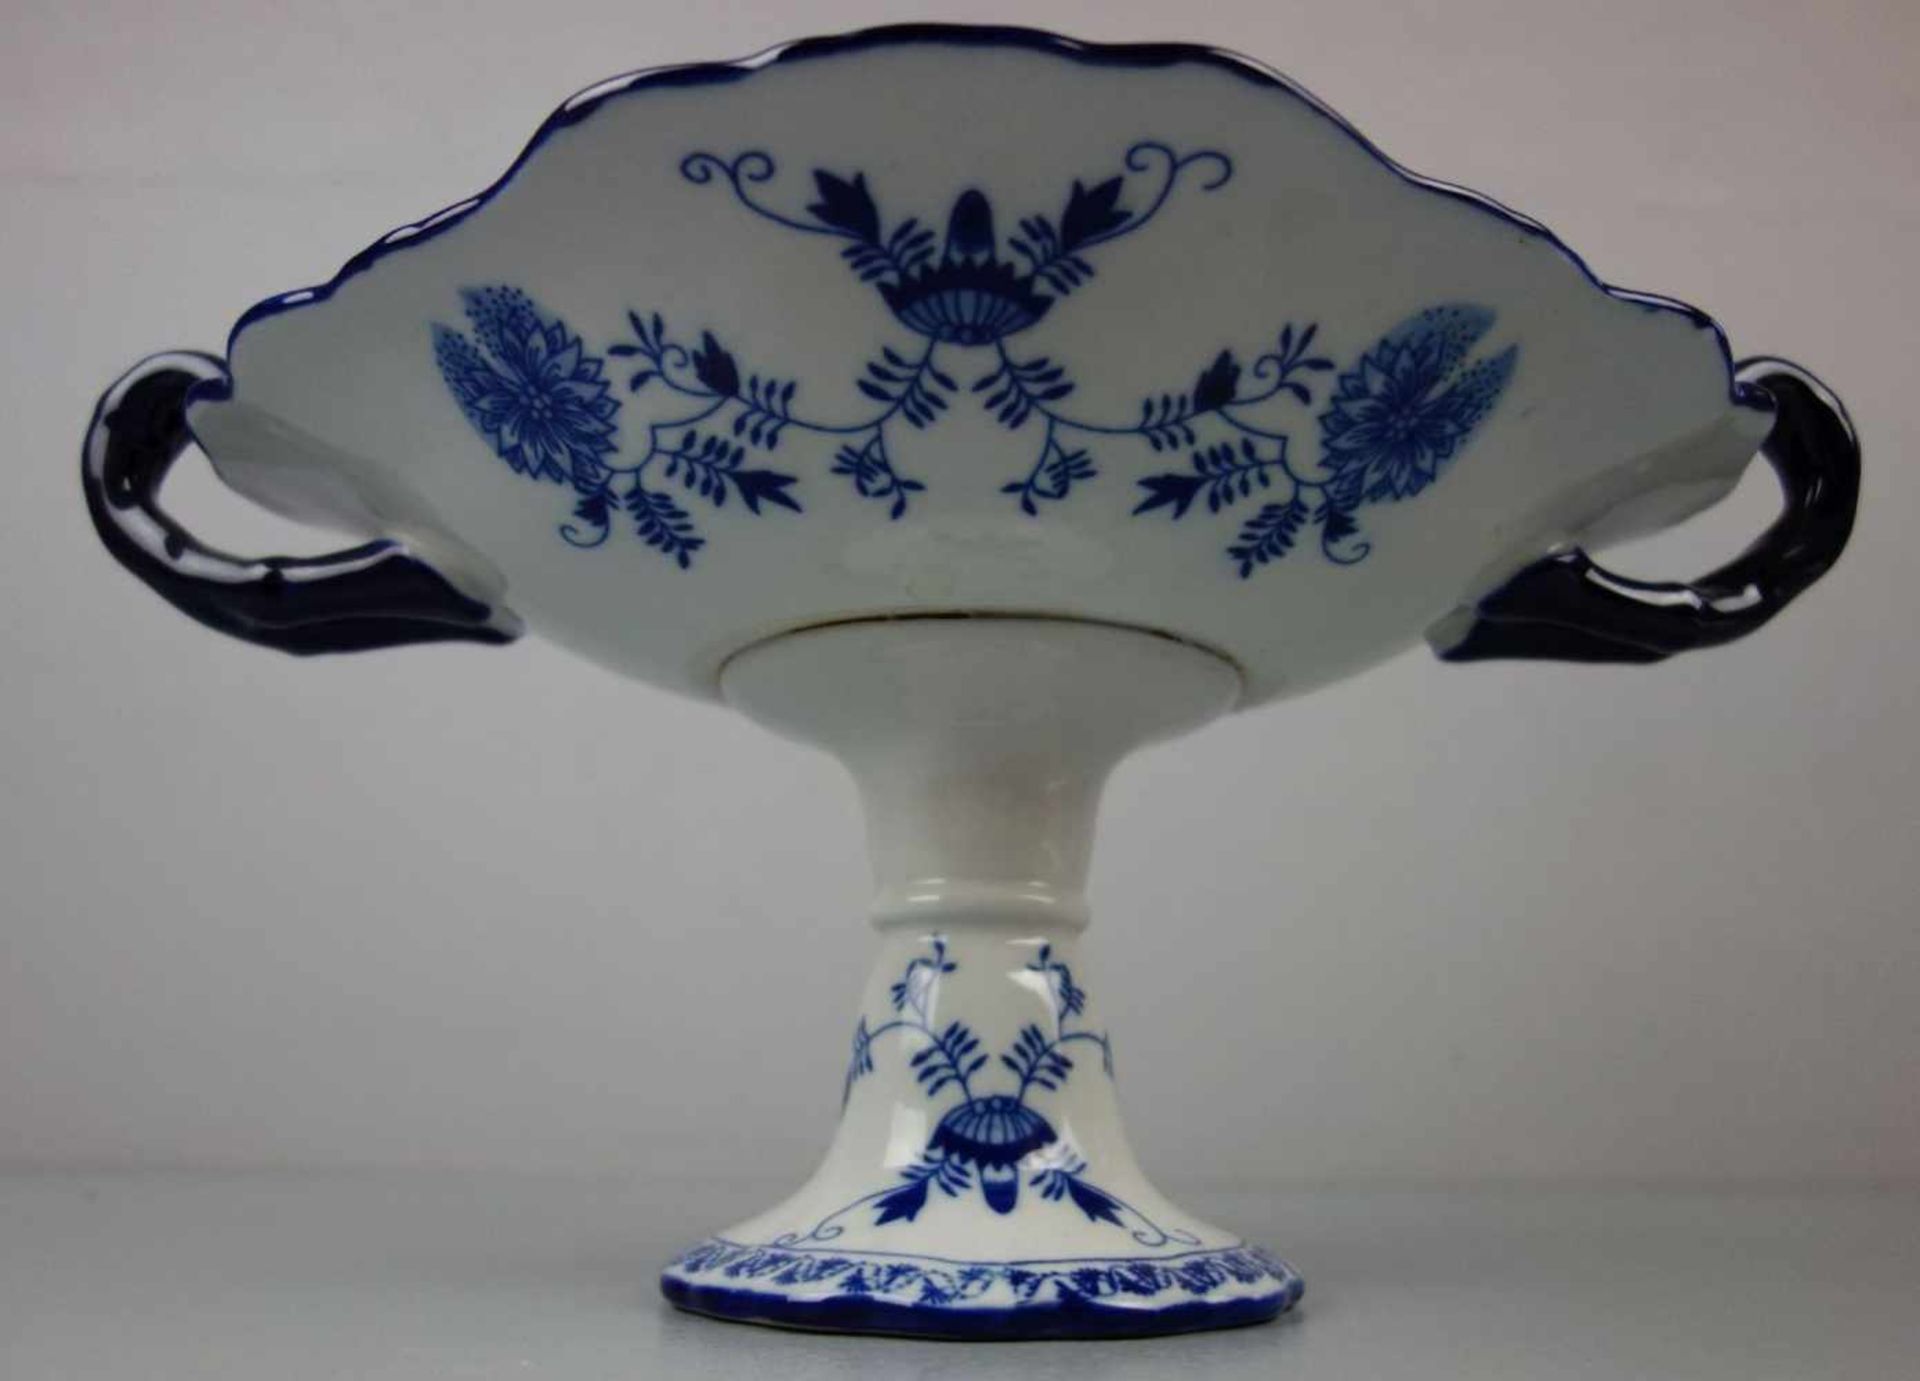 SCHALE / FUSSSCHALE / bowl on a stand, zweiteilig, Porzellan, gemarkt in Anlehnung an die Manufaktur - Image 6 of 6